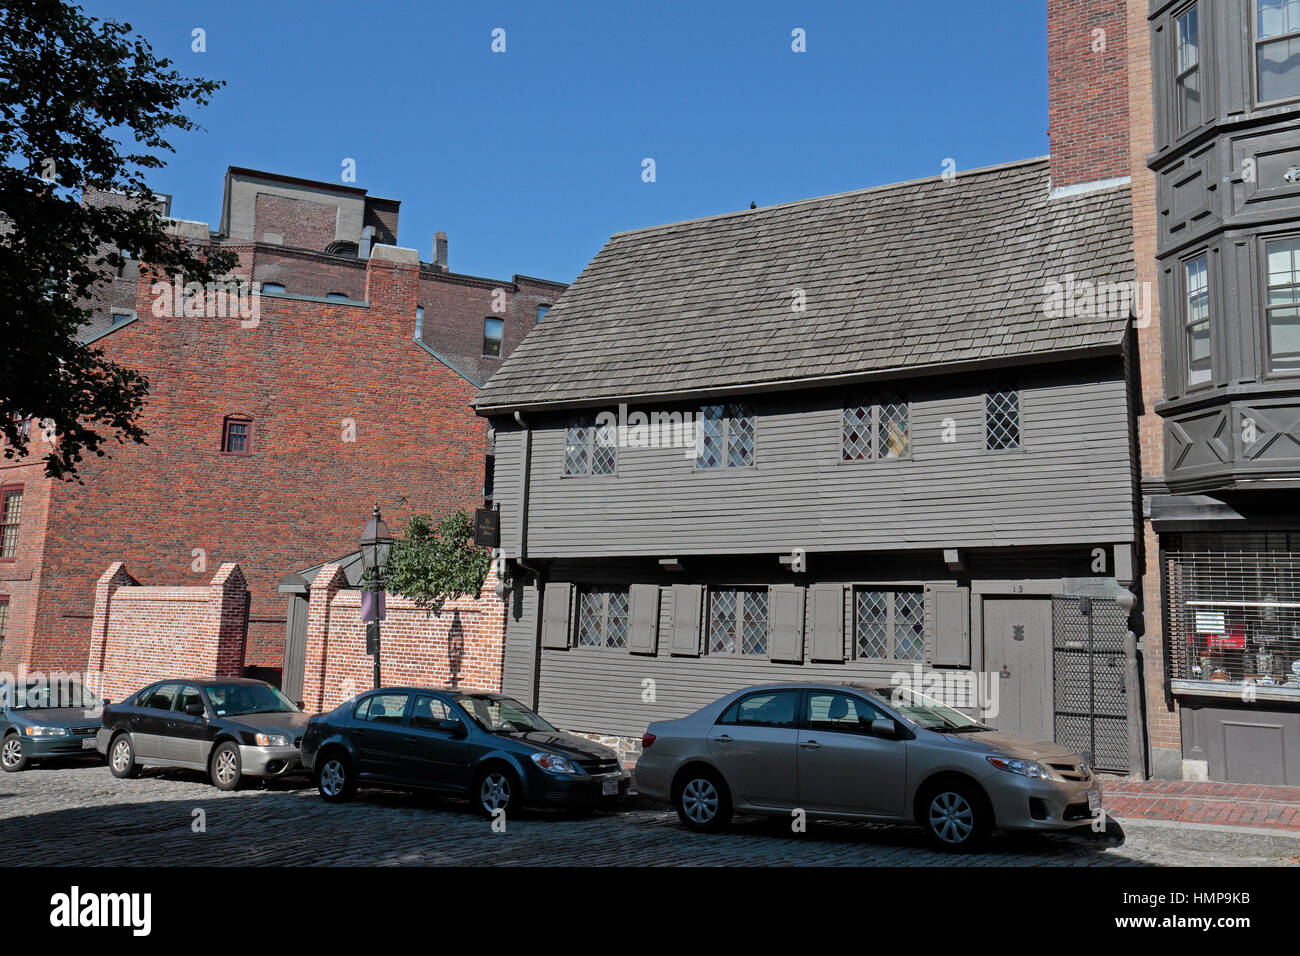 La Maison de Paul Revere, maison coloniale de Paul Revere patriot américains pendant la Révolution américaine, Boston, Massachusetts, United States. Banque D'Images